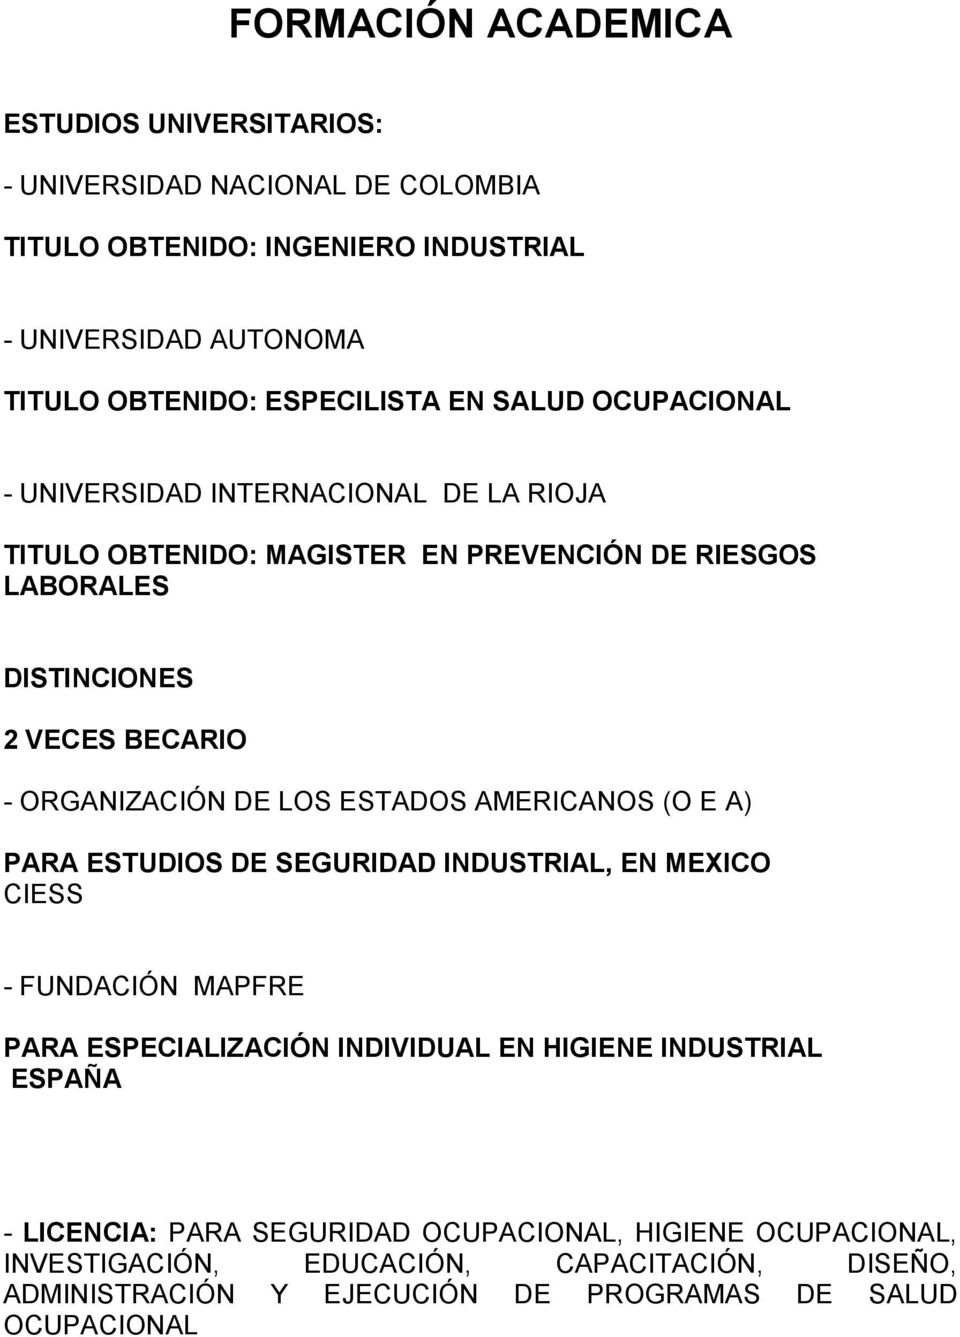 ORGANIZACIÓN DE LOS ESTADOS AMERICANOS (O E A) PARA ESTUDIOS DE SEGURIDAD INDUSTRIAL, EN MEXICO CIESS - FUNDACIÓN MAPFRE PARA ESPECIALIZACIÓN INDIVIDUAL EN HIGIENE